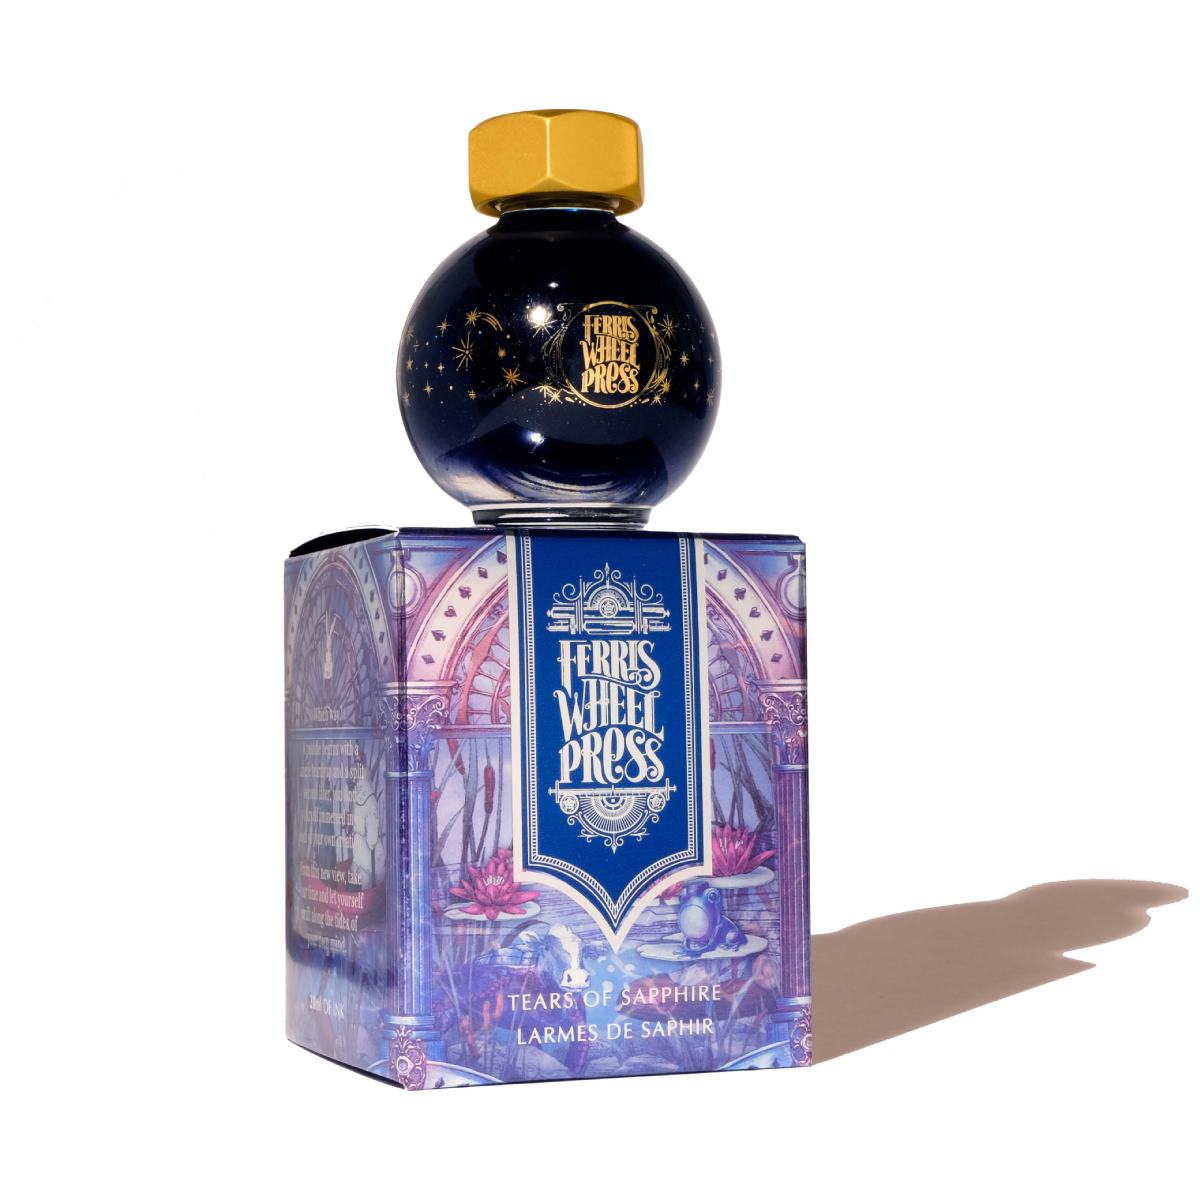 Ferris Wheel Press - Ferritales Ink - Tears of Sapphire, 20 ml